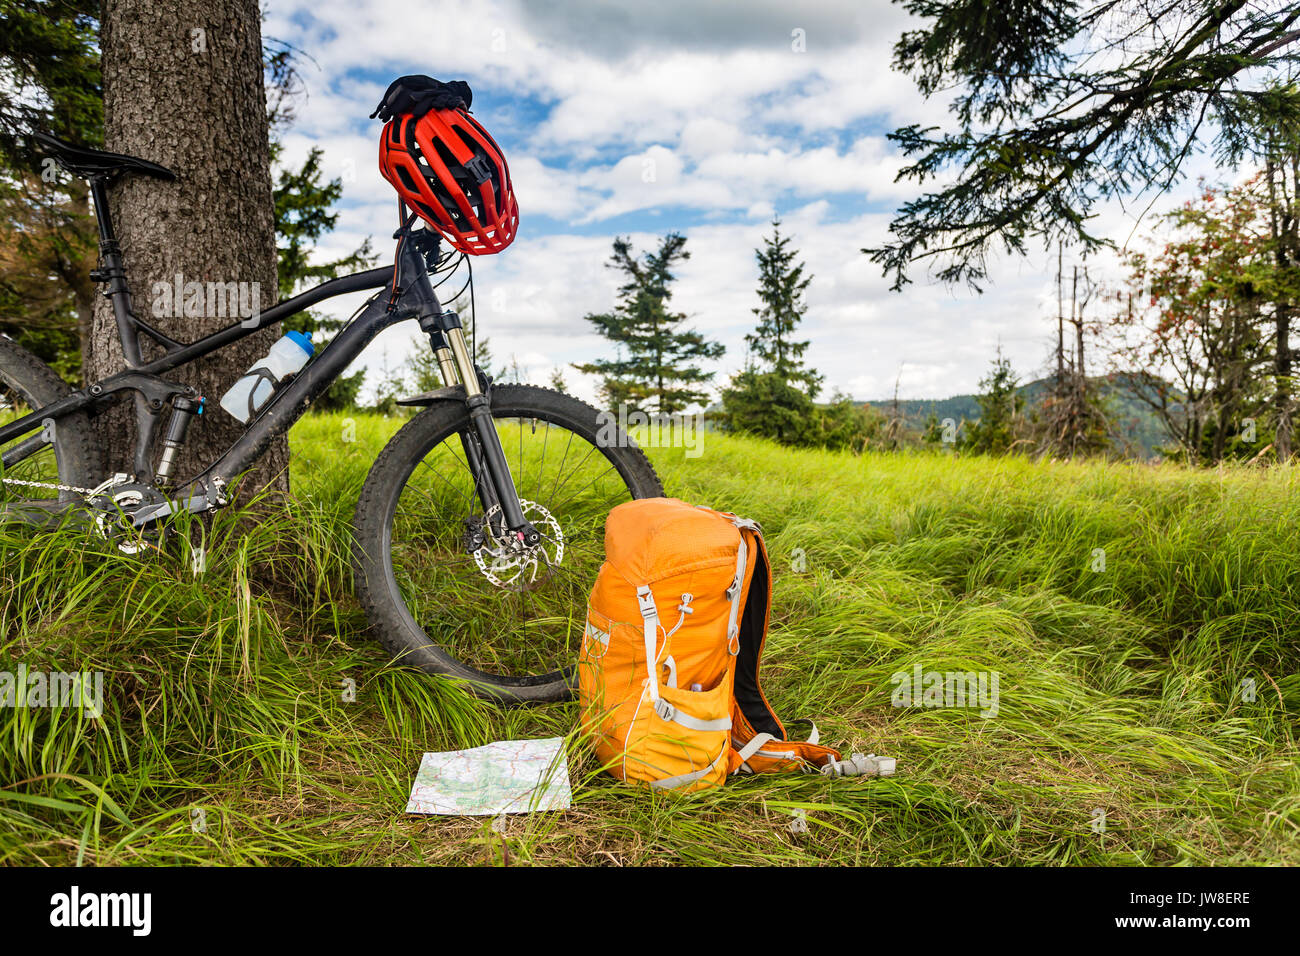 L'équipement de vélo de montagne dans les bois, bikepacking voyage aventure dans les montagnes vertes. Camping et randonnée à vélo VTT voyage avec sac à dos, wilderness fores Banque D'Images